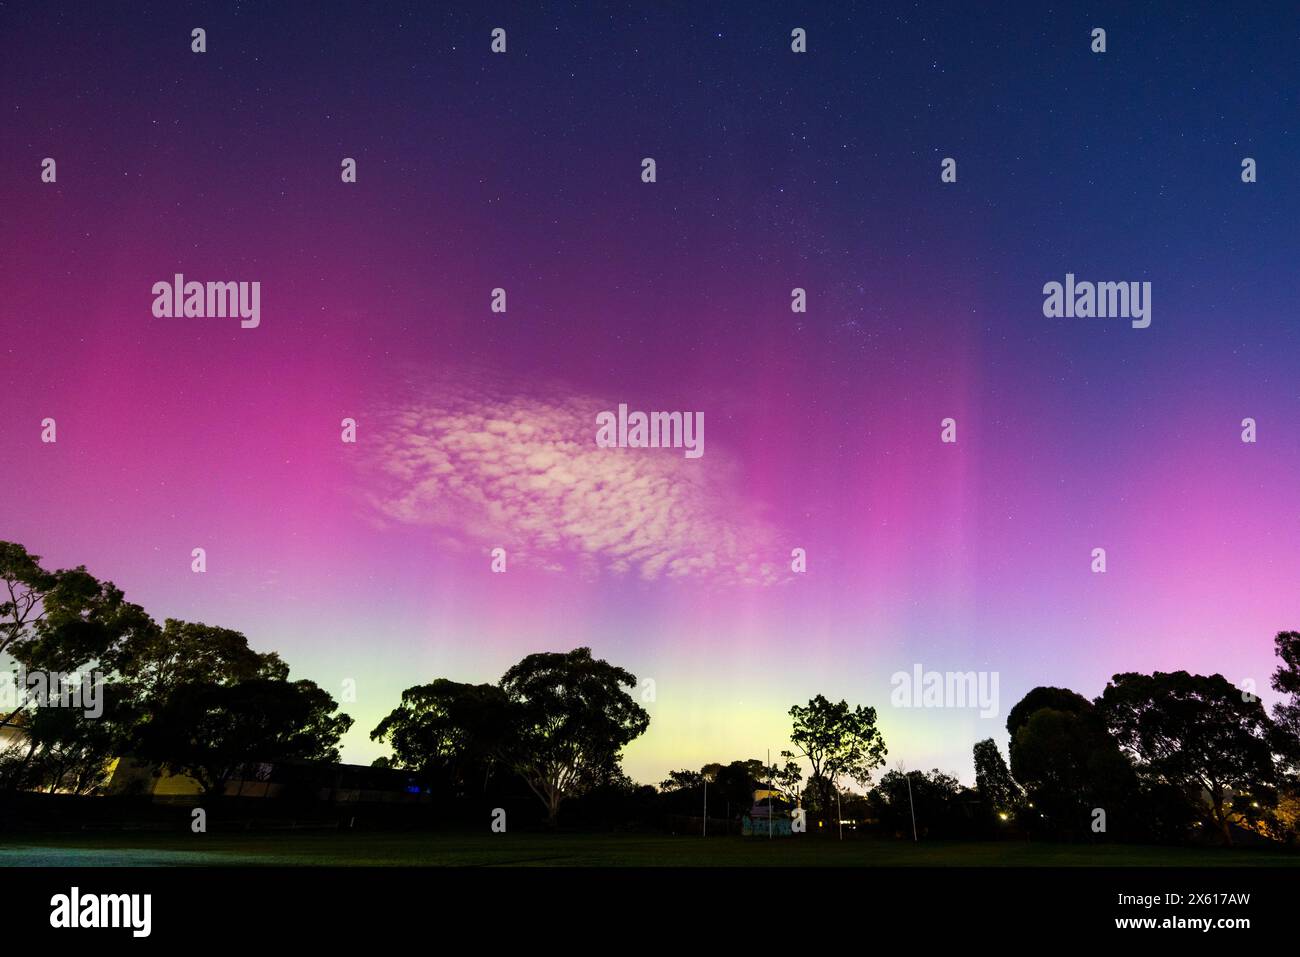 MELBOURNE, AUSTRALIA - 12 MAGGIO: L'aumento dell'attività solare determina la presenza della rara Aurora Australis nelle aree meridionali dell'Australia. Questa immagine Foto Stock